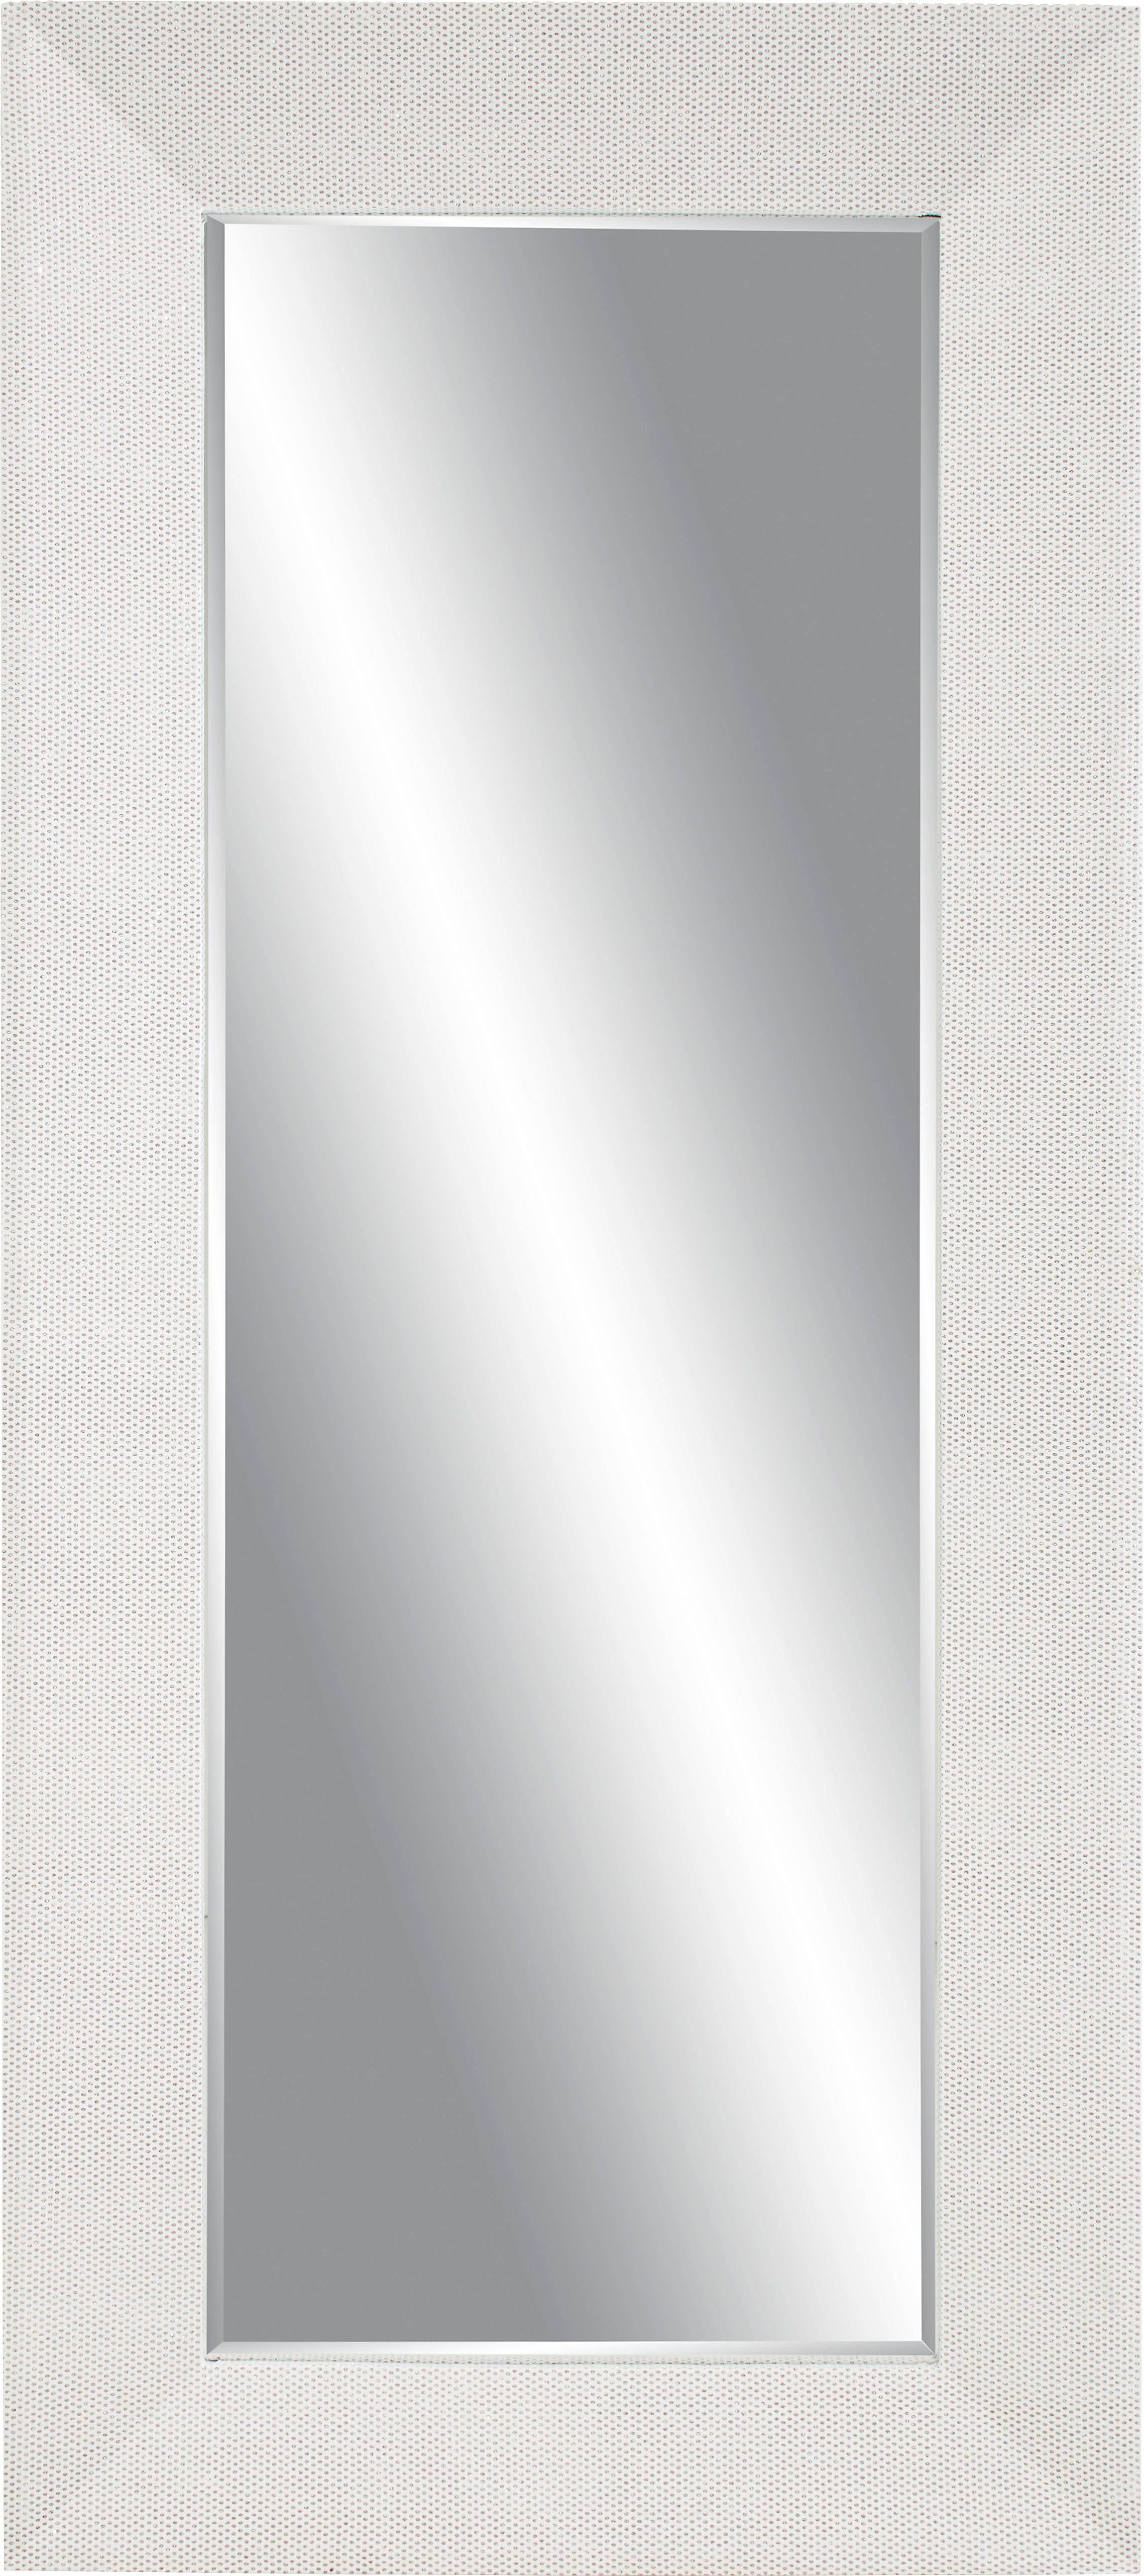 Fali Tükör Ezüst Színű Keret Glamour - Ezüst, Üveg/Fa (80/180/5cm)